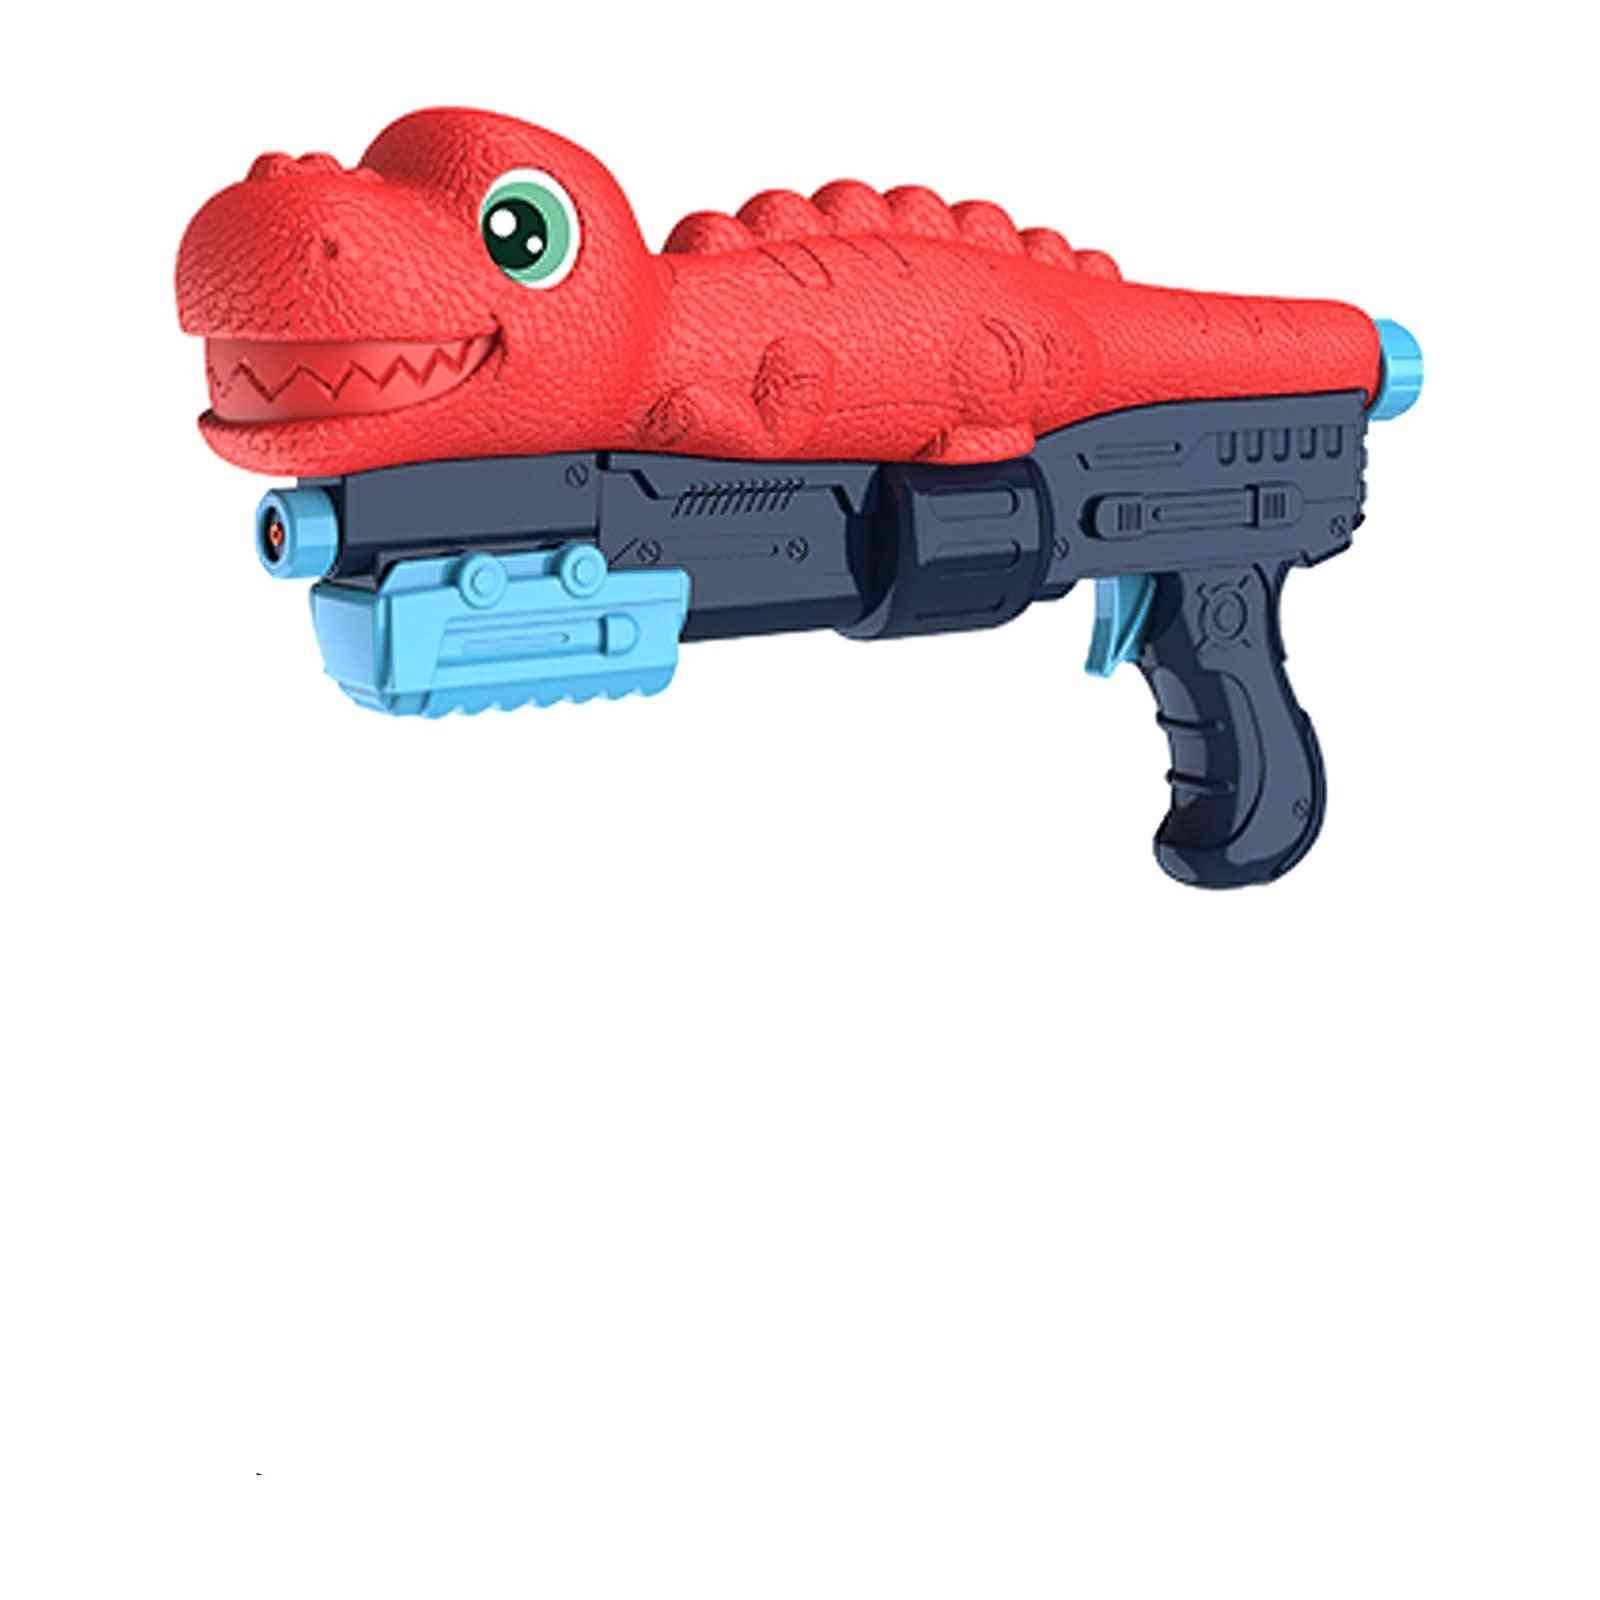 Kids Squitter Water Gun Toy